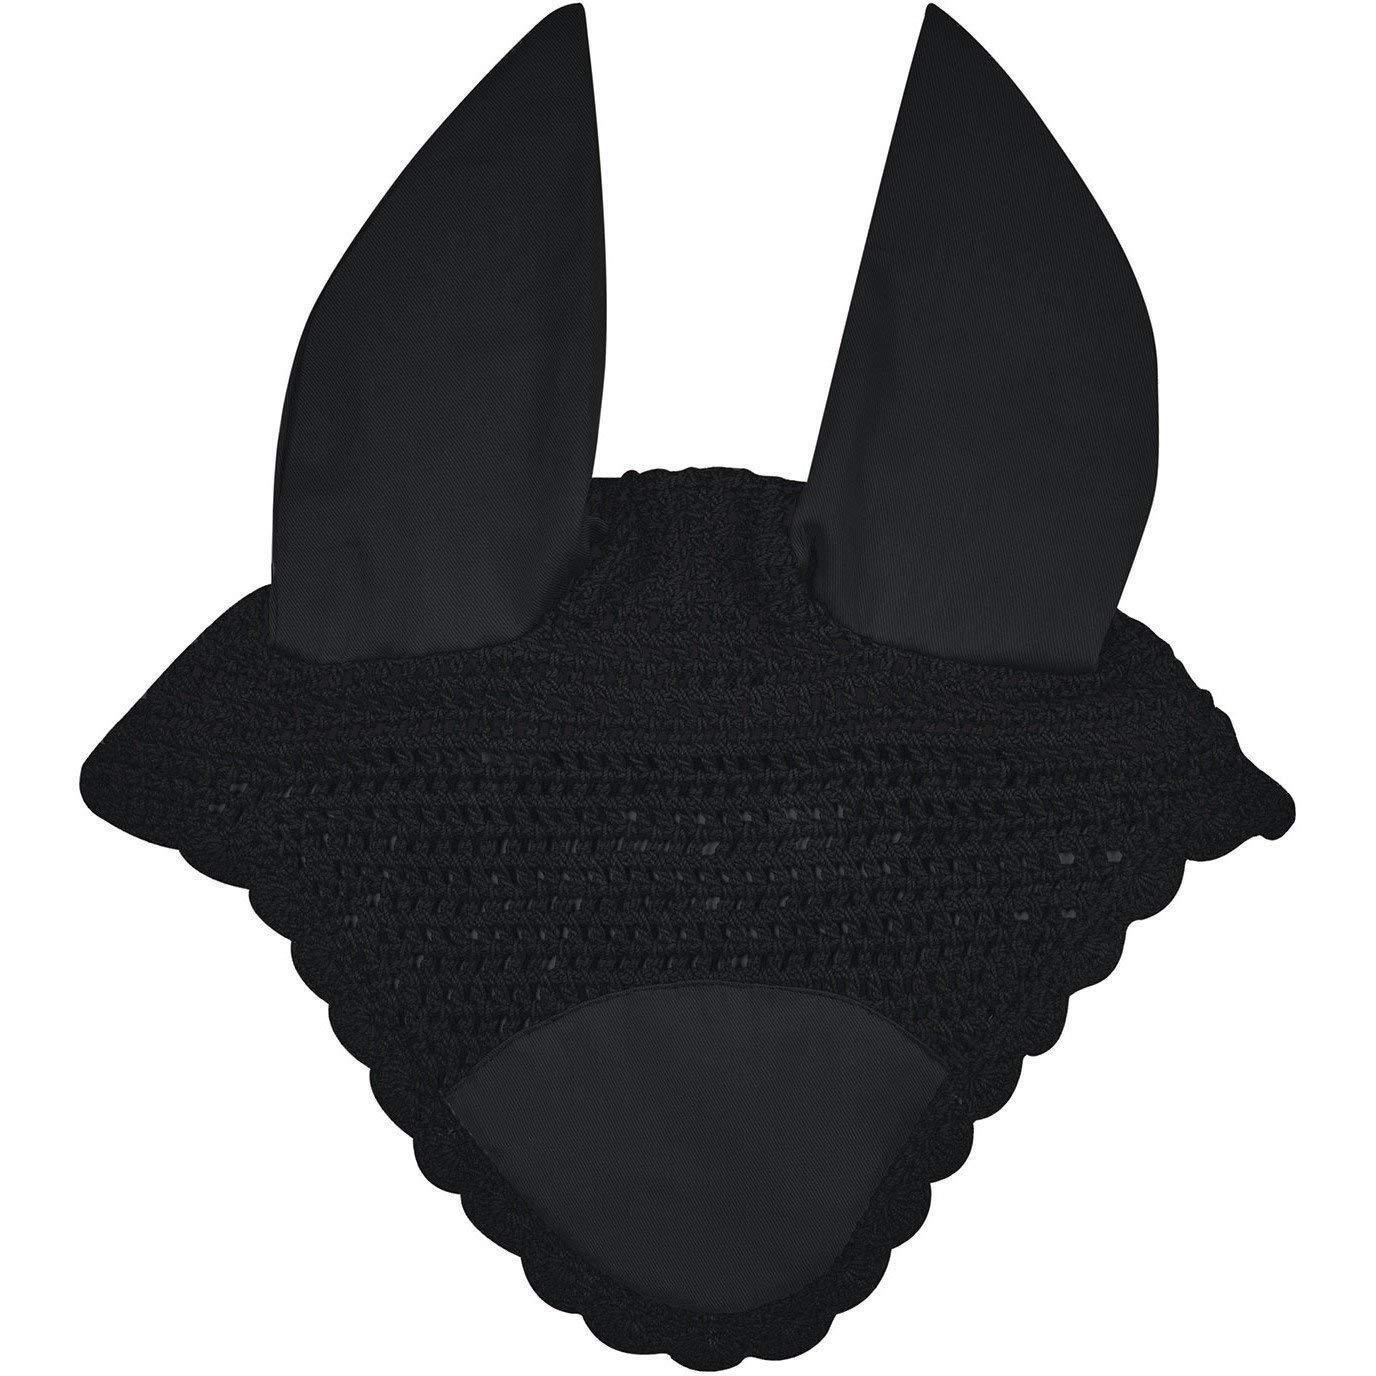 WEATHERBEETA Prime Ear Bonnet (Black)